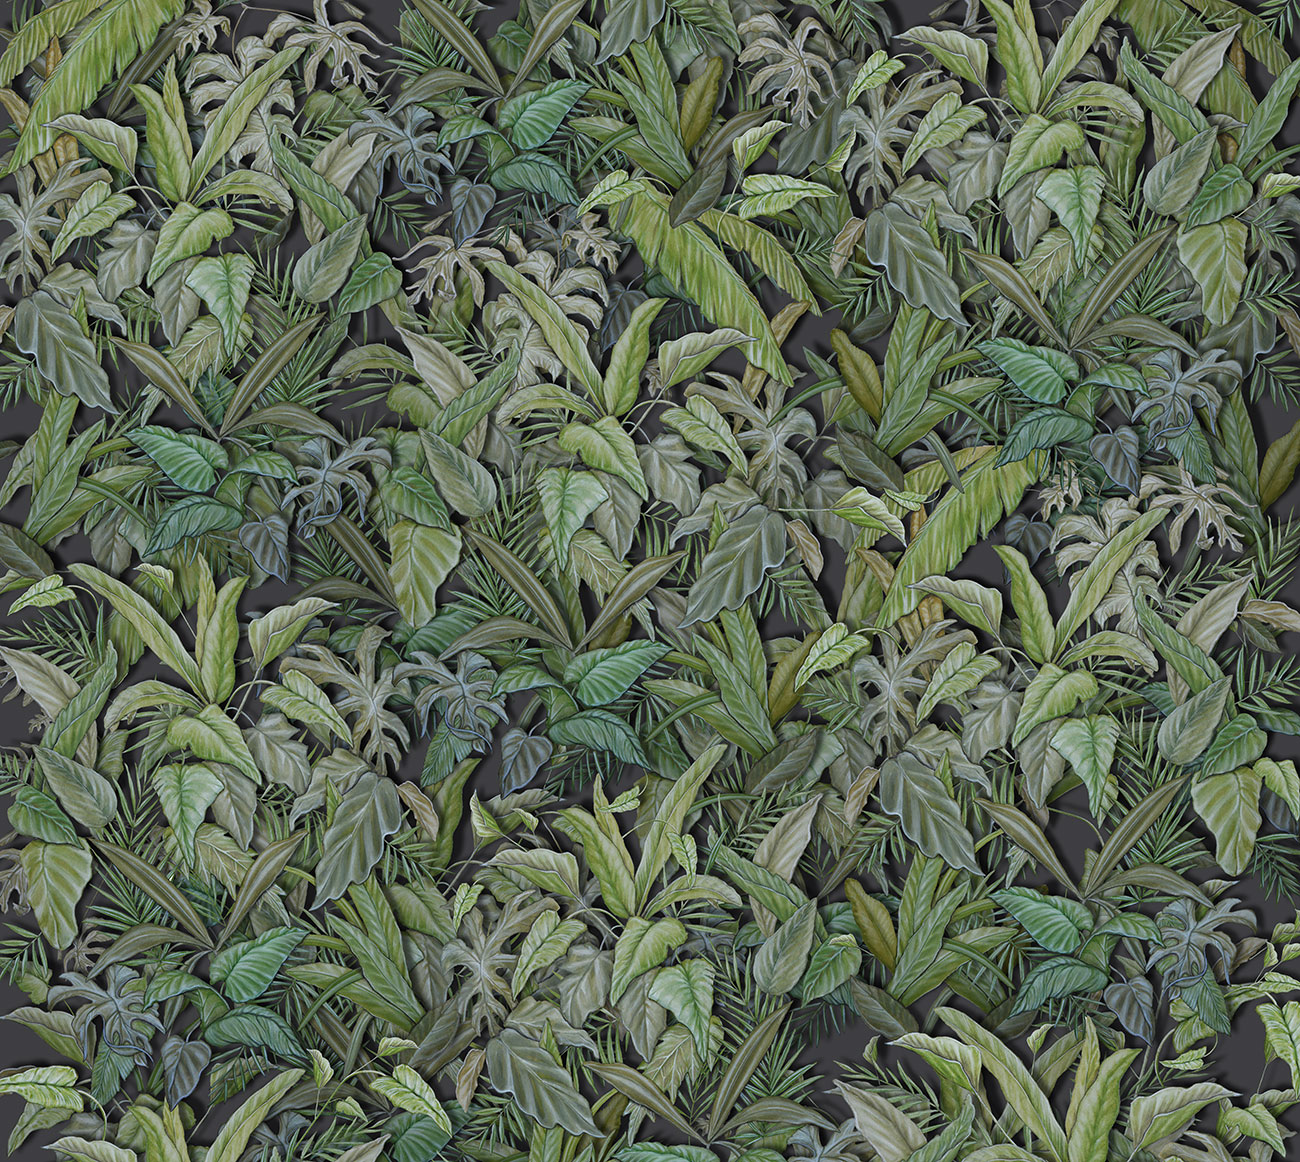 Carta da parati jungle, effetto 3d con composizione di foglie esotiche con vari toni di verde